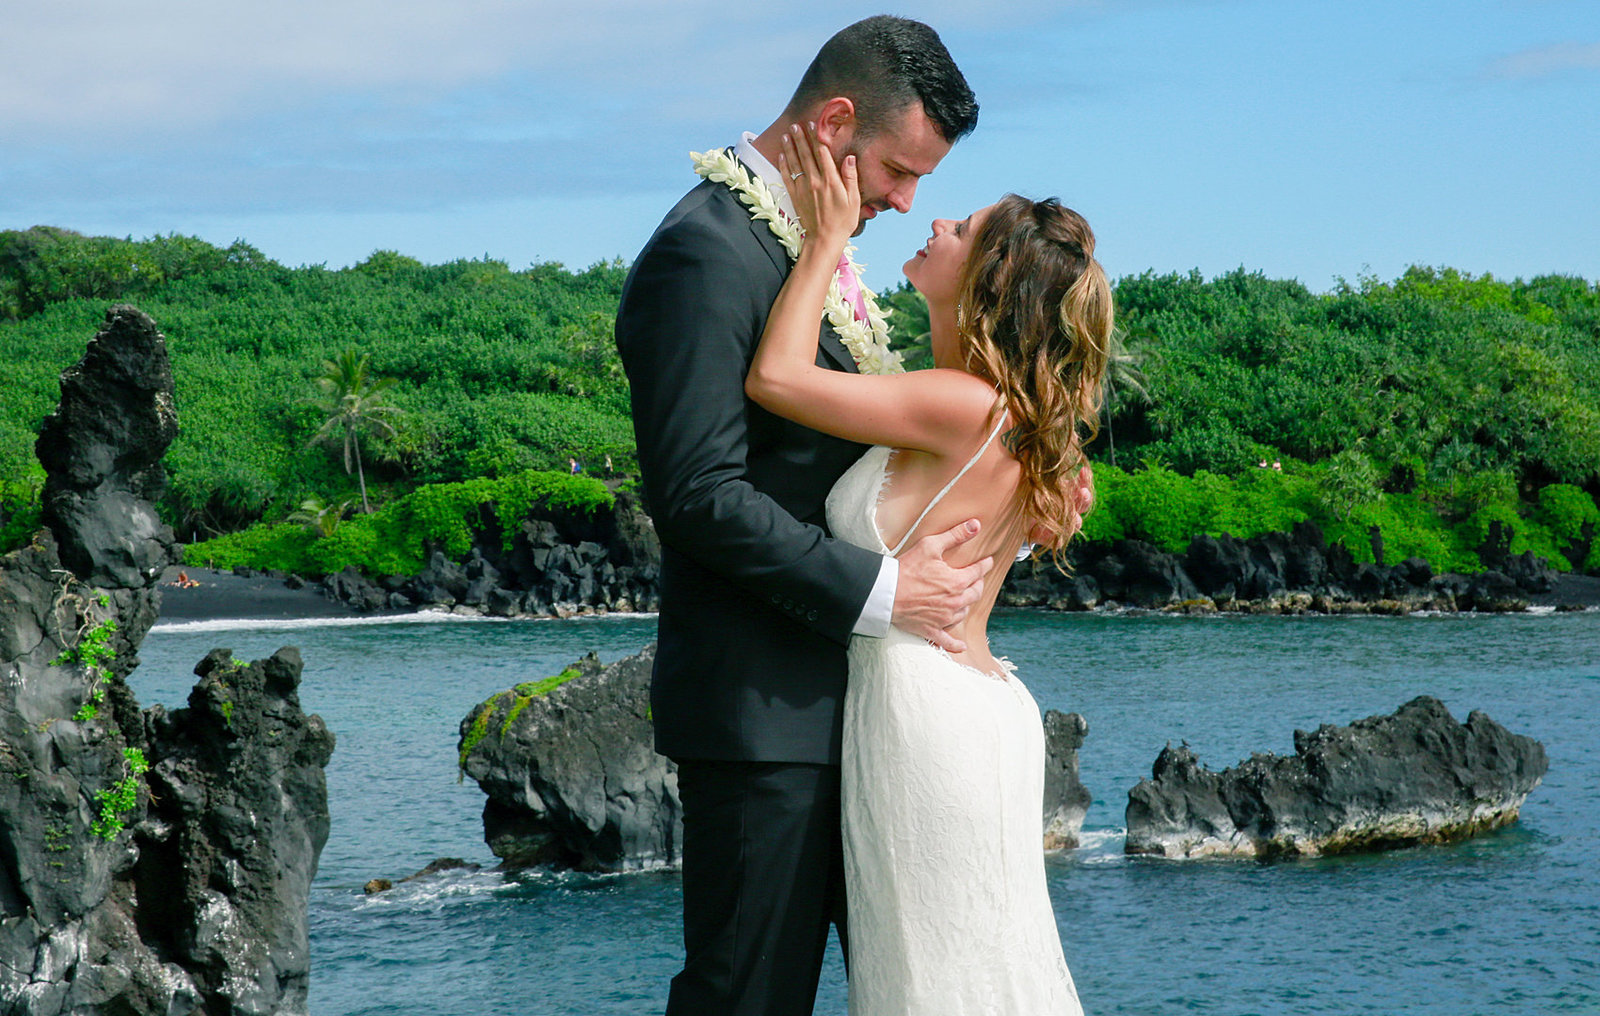 Instagram photographers on Maui